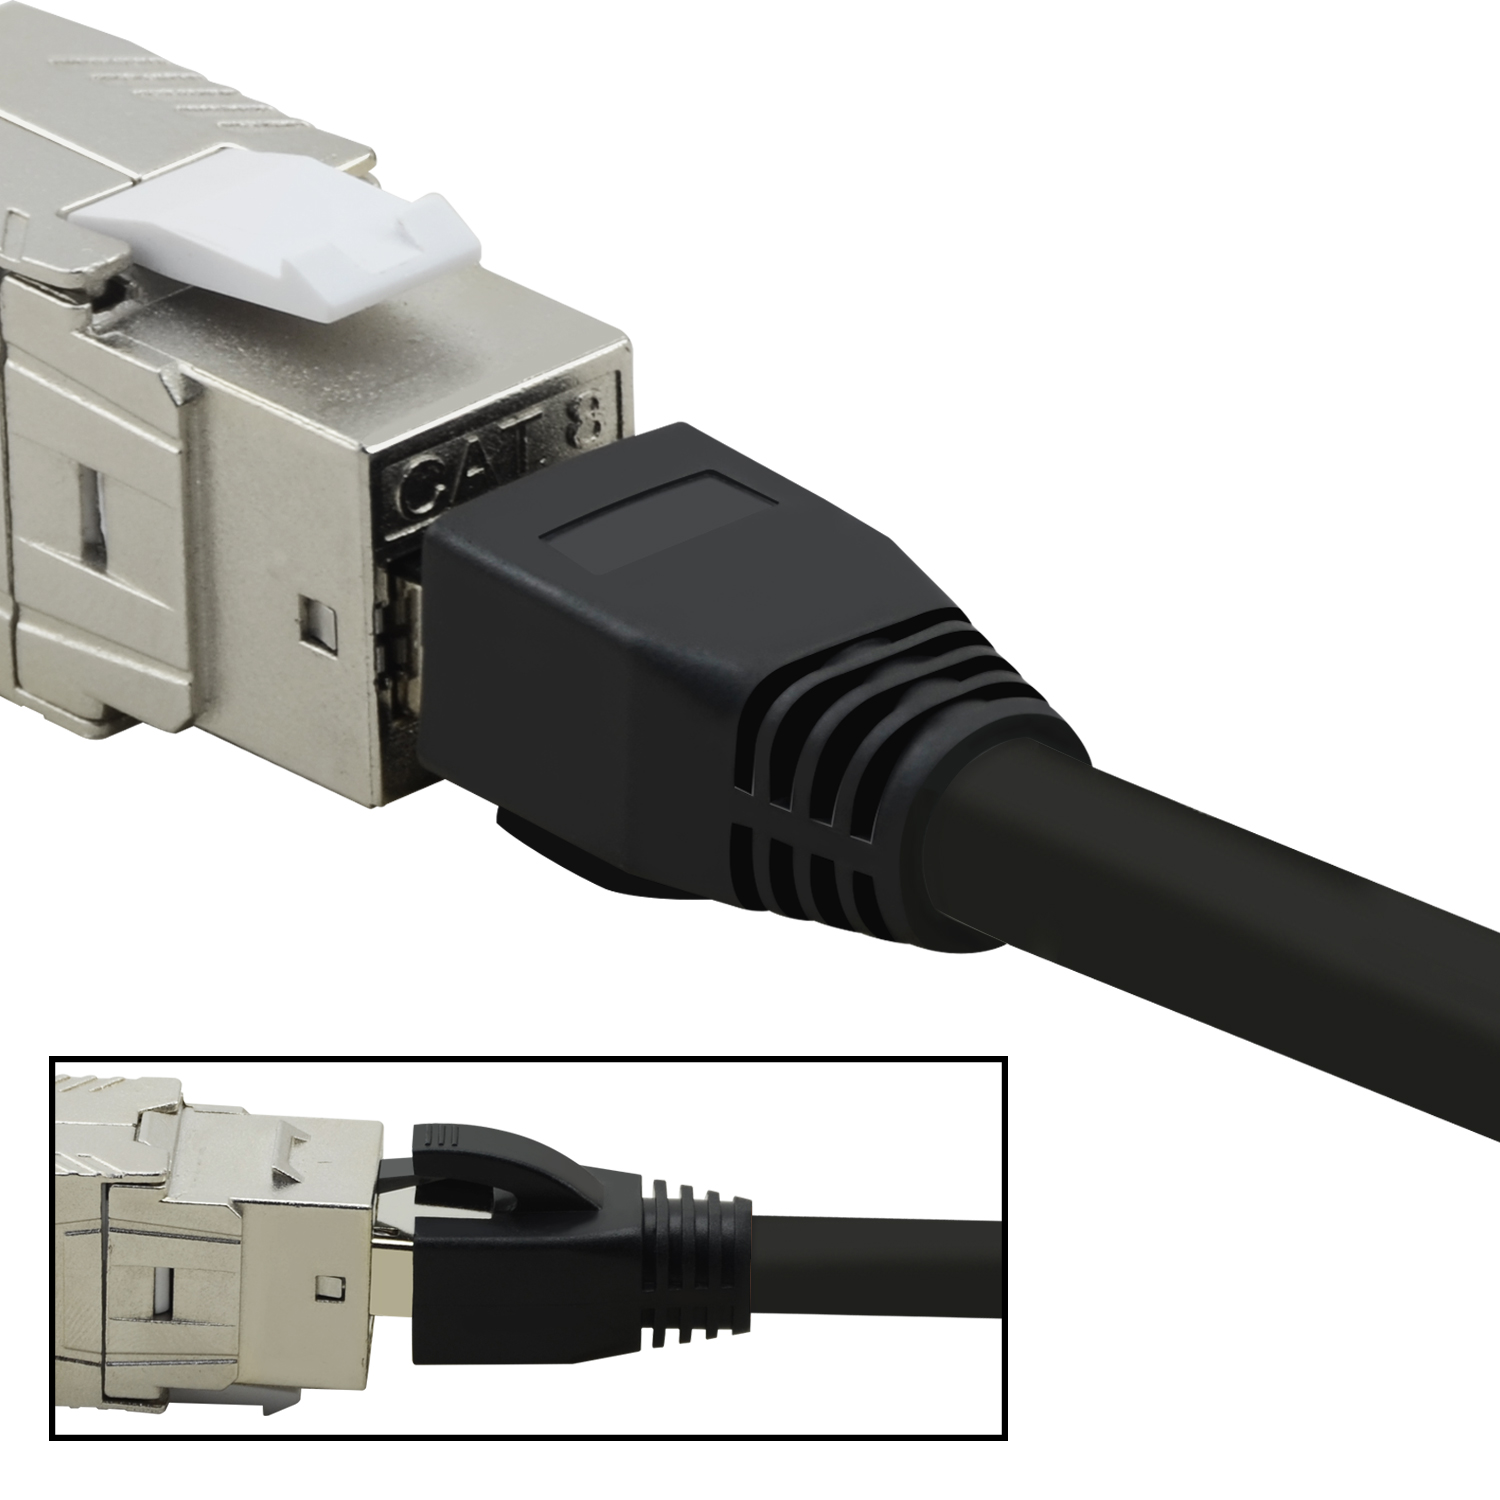 TPFNET Patchkabel m 10er / 3 Netzwerkkabel, GBit, 3m Pack 40 schwarz, Netzwerkkabel S/FTP